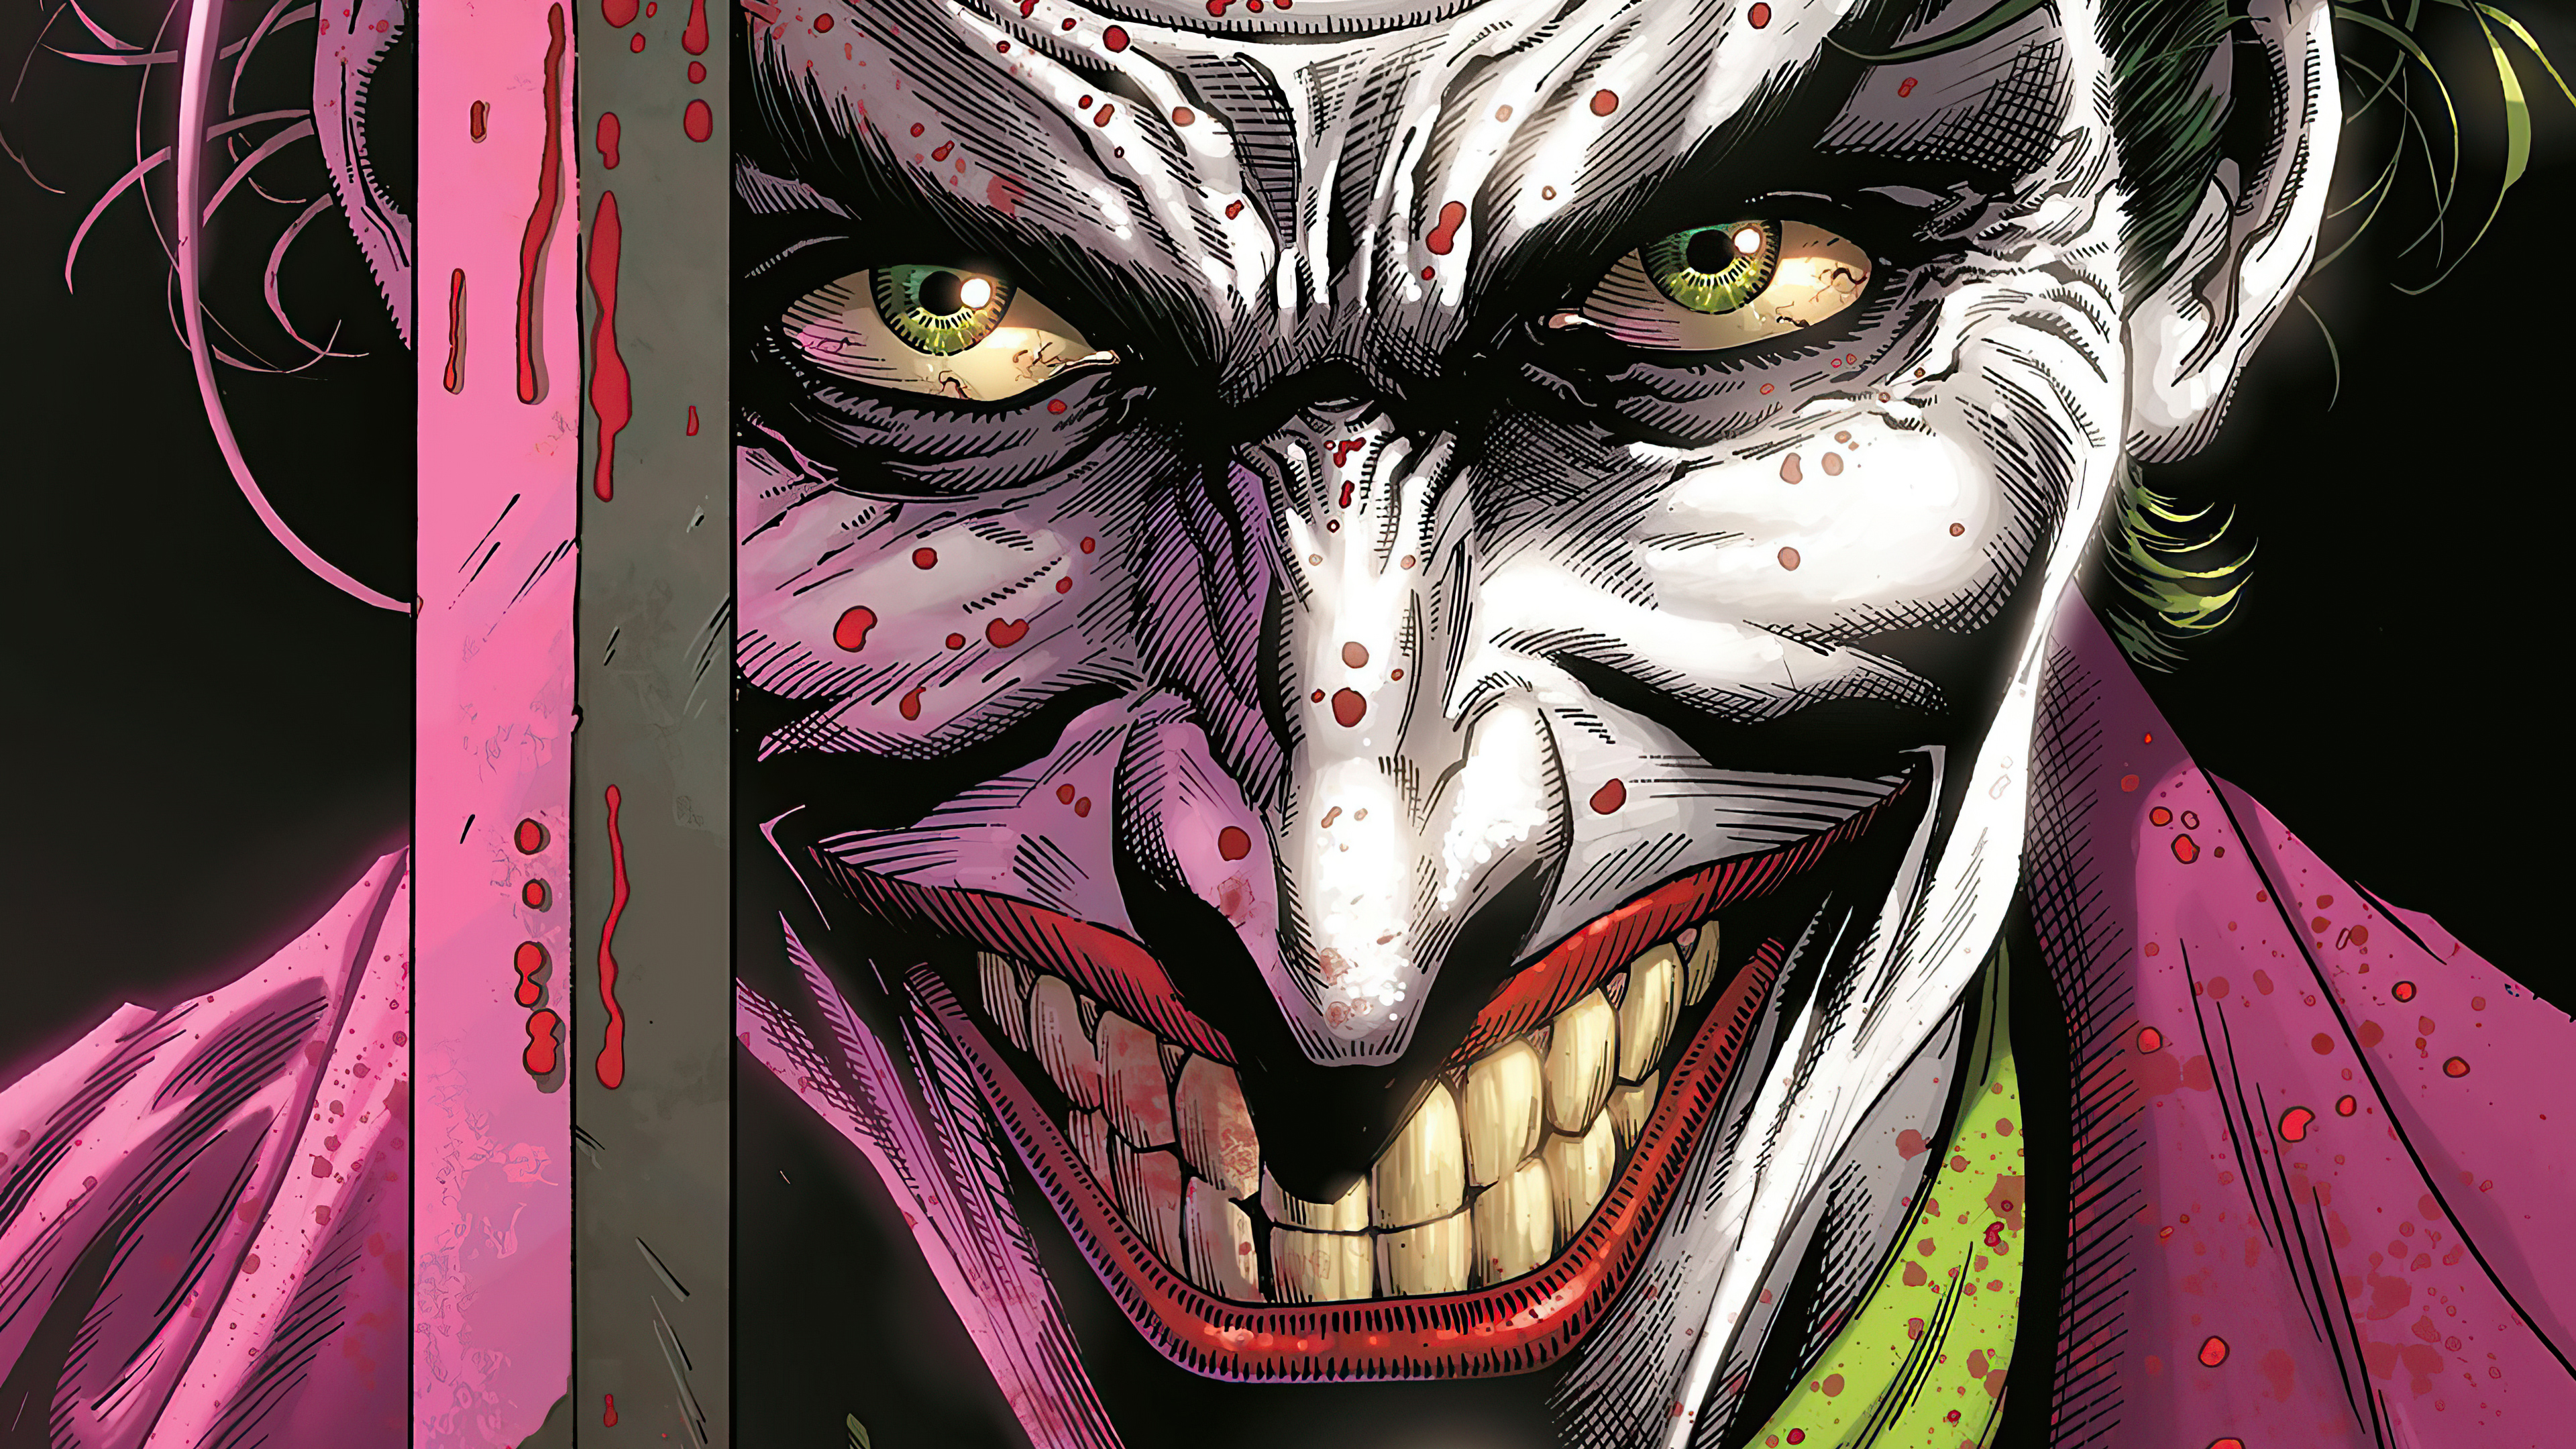 Wallpaper 4k Joker Devil Smile Wallpaper